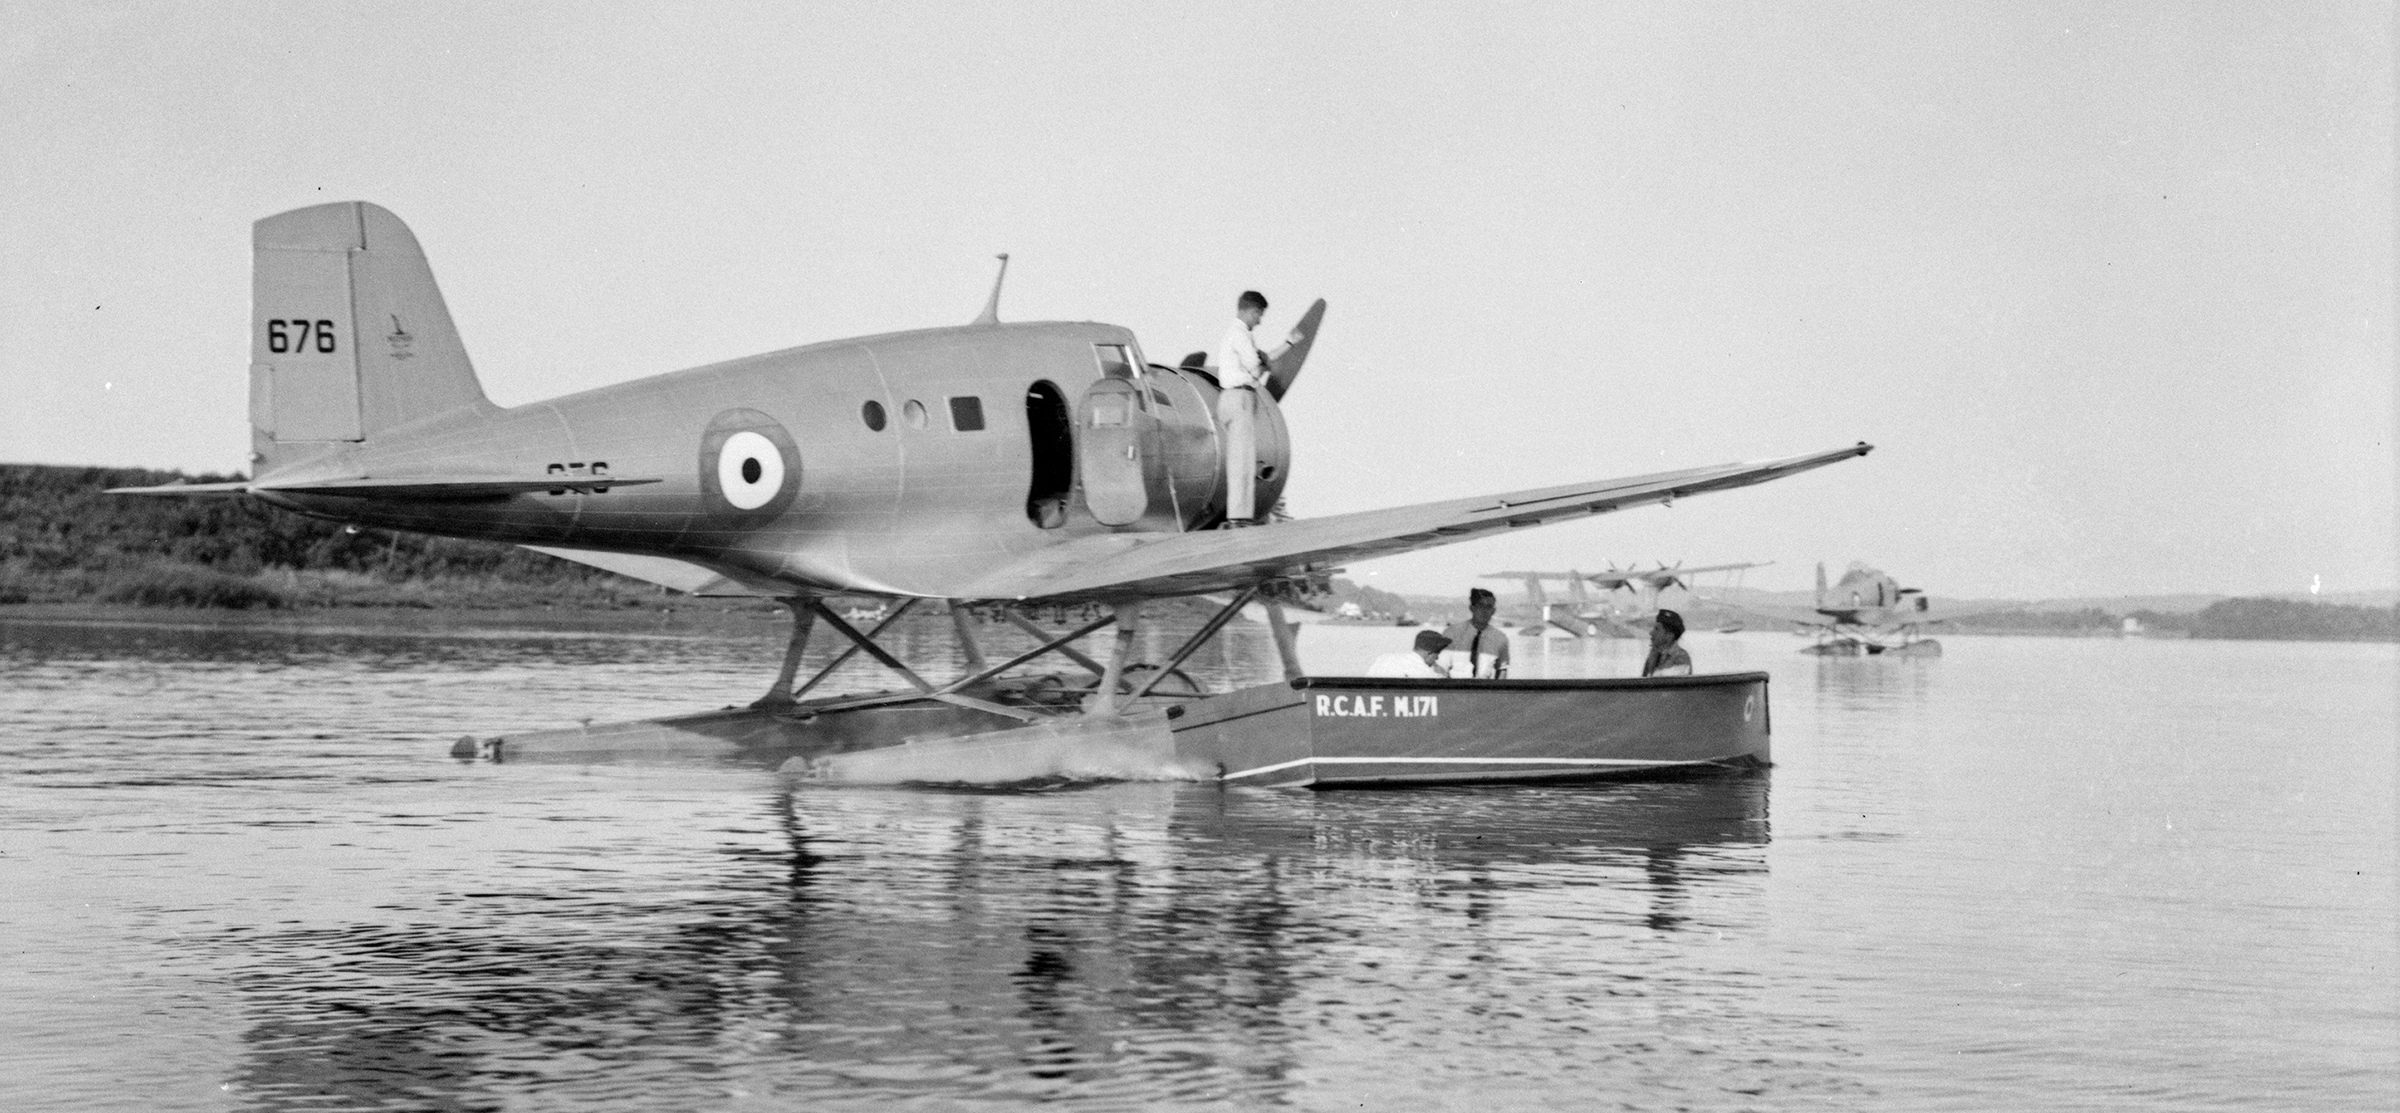 Des gens chargent des provisions à bord du Northrop Delta No 676 du 8e Escadron de l’ARC en prévision d’un vol de Rockcliffe, en Ontario, jusqu’à Sydney, en Nouvelle-Écosse, le 26 août 1939. Le bateau à moteur qui se trouve près de l’avion appartient au Service maritime de l’ARC. PHOTO : MDN, PA-063532